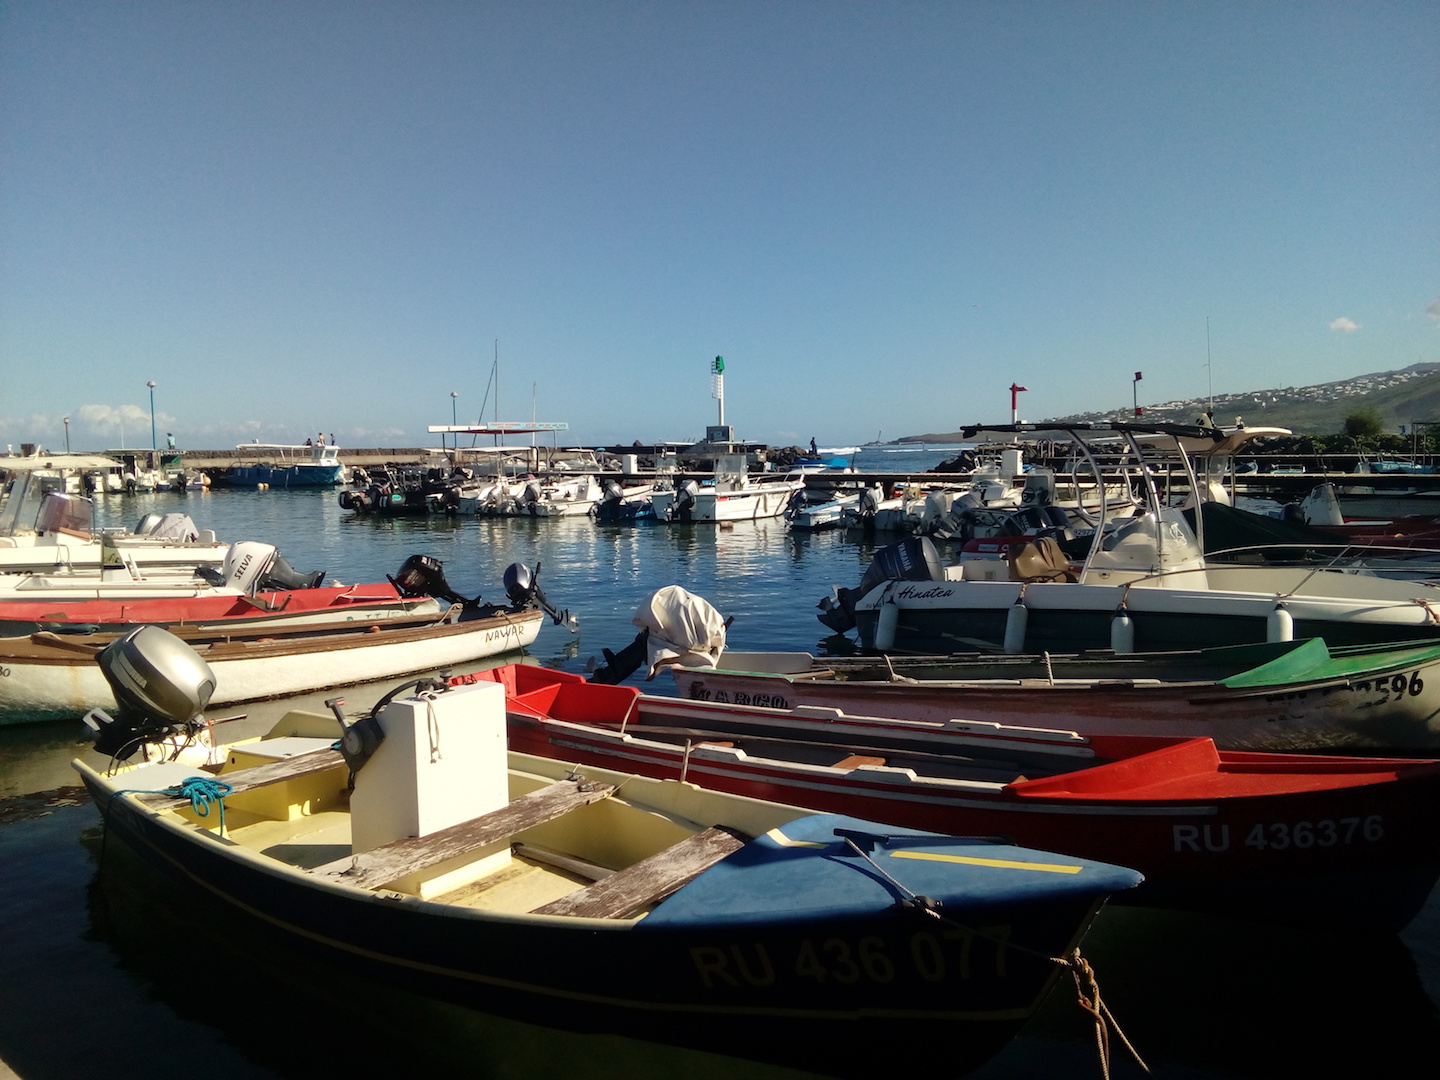 Pêche et aquaculture à La Réunion : L’ARIPA verse 1,4 million d’euros d’aides européennes aux opérateurs locaux